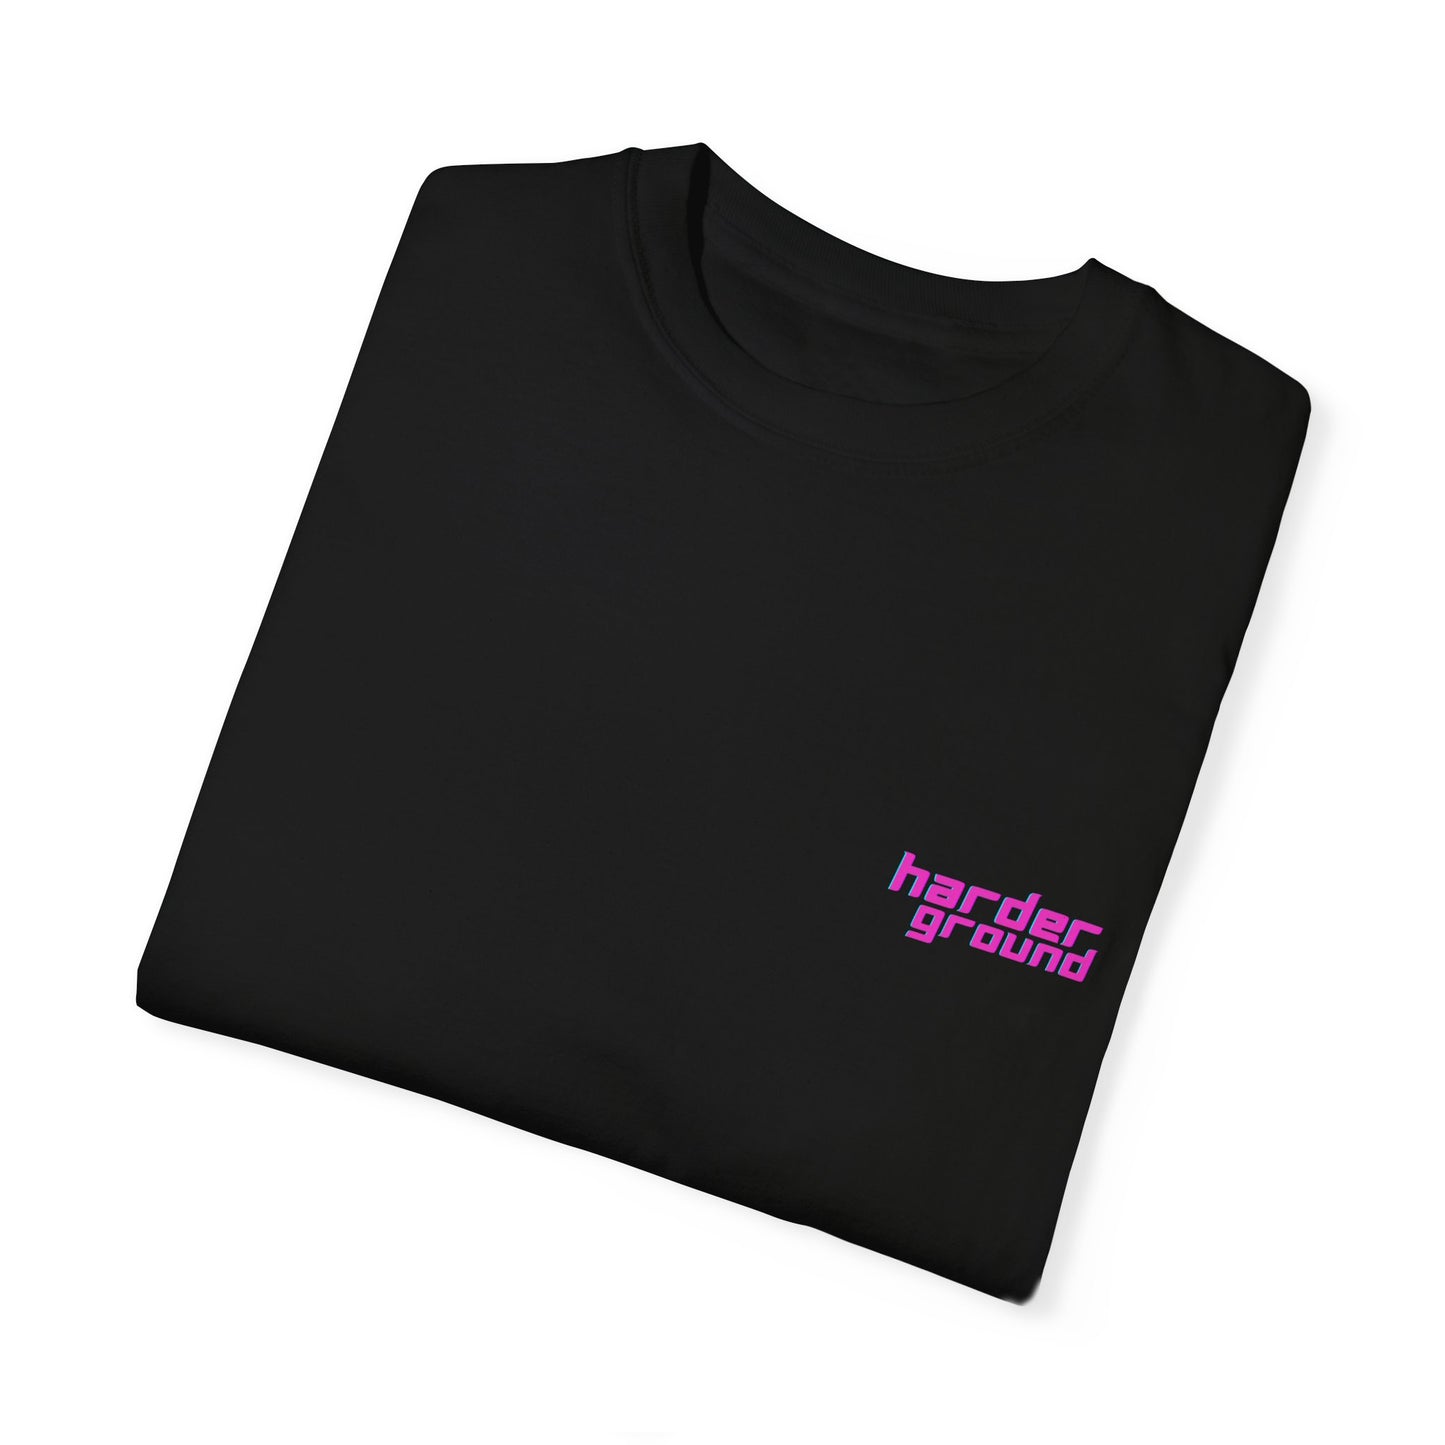 JDM Harderground - Unisex Garment-Dyed T-shirt - Front &amp; back logo